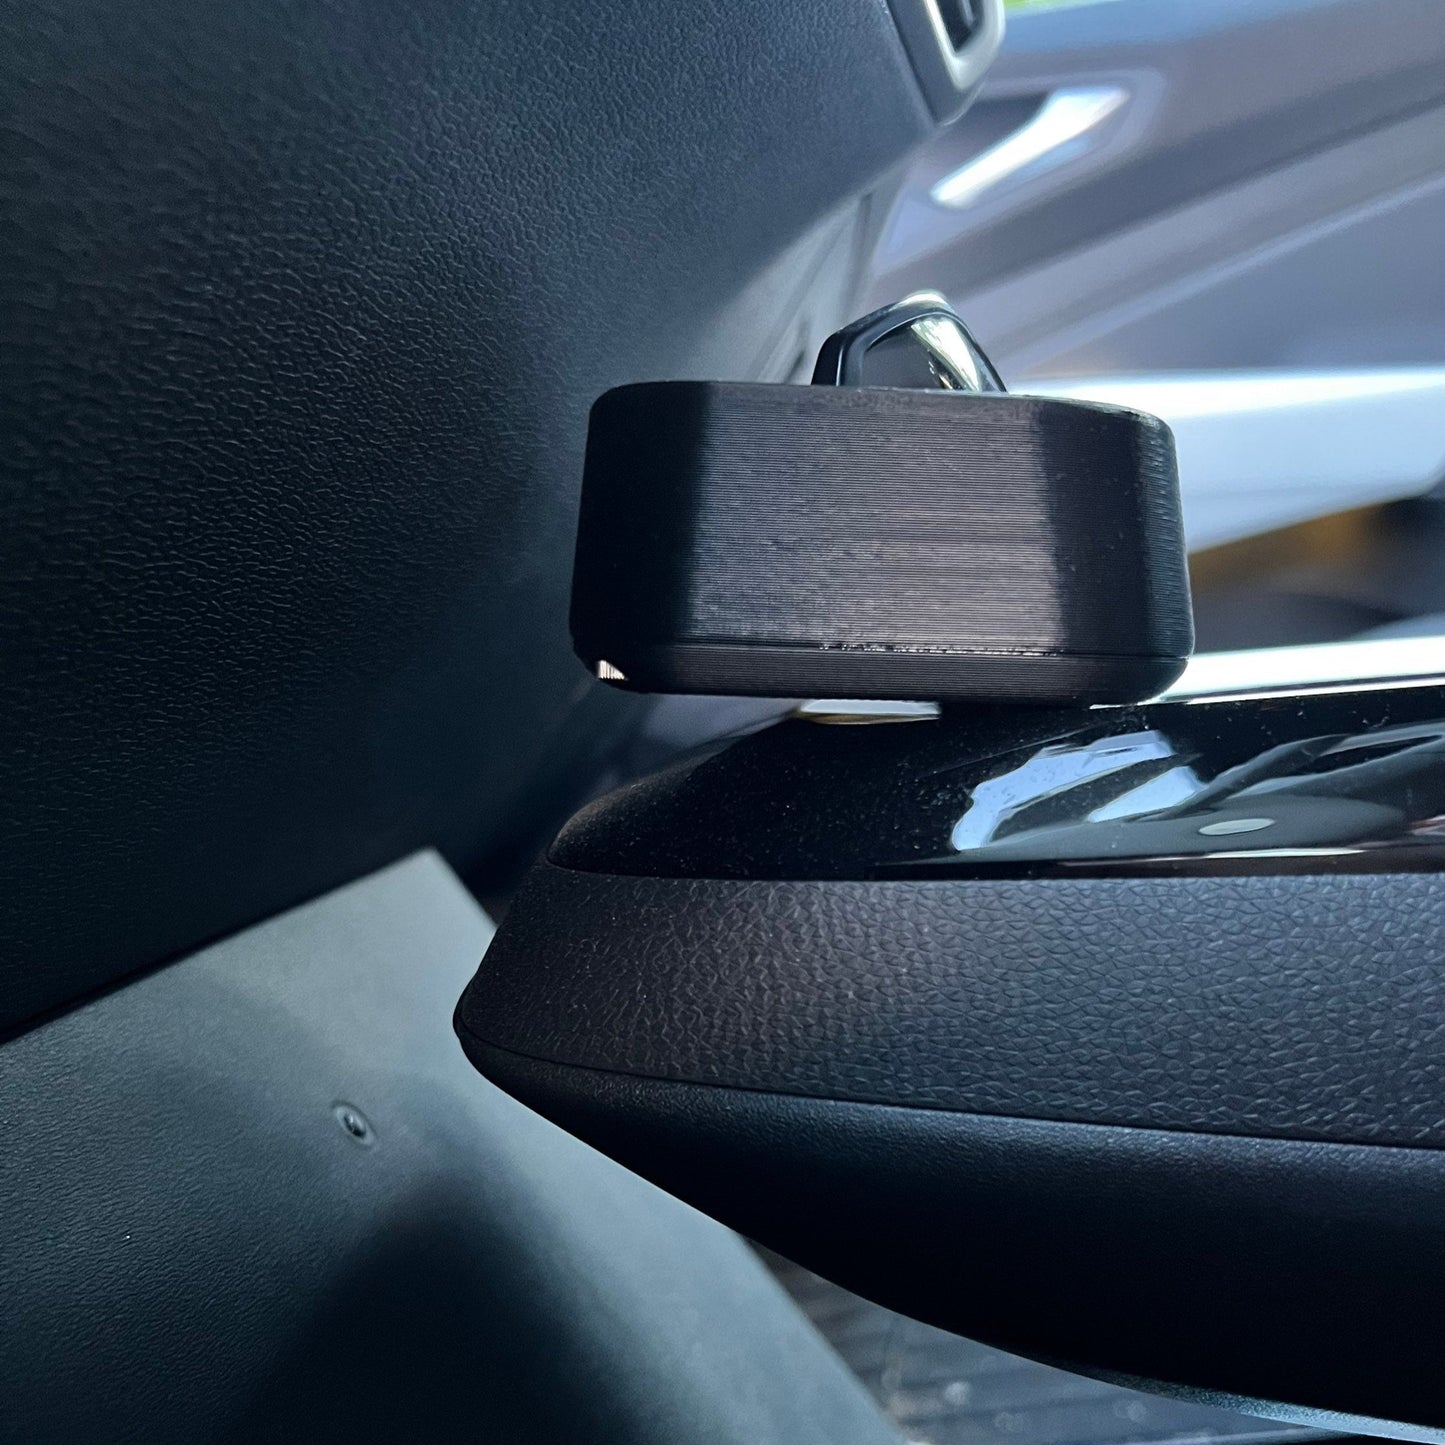 Ablage für Sonnenbrillen und andere Kleinteile für VW ID.4. Passt oben auf der Mittelkonsole in die Kartenhalterschlitze